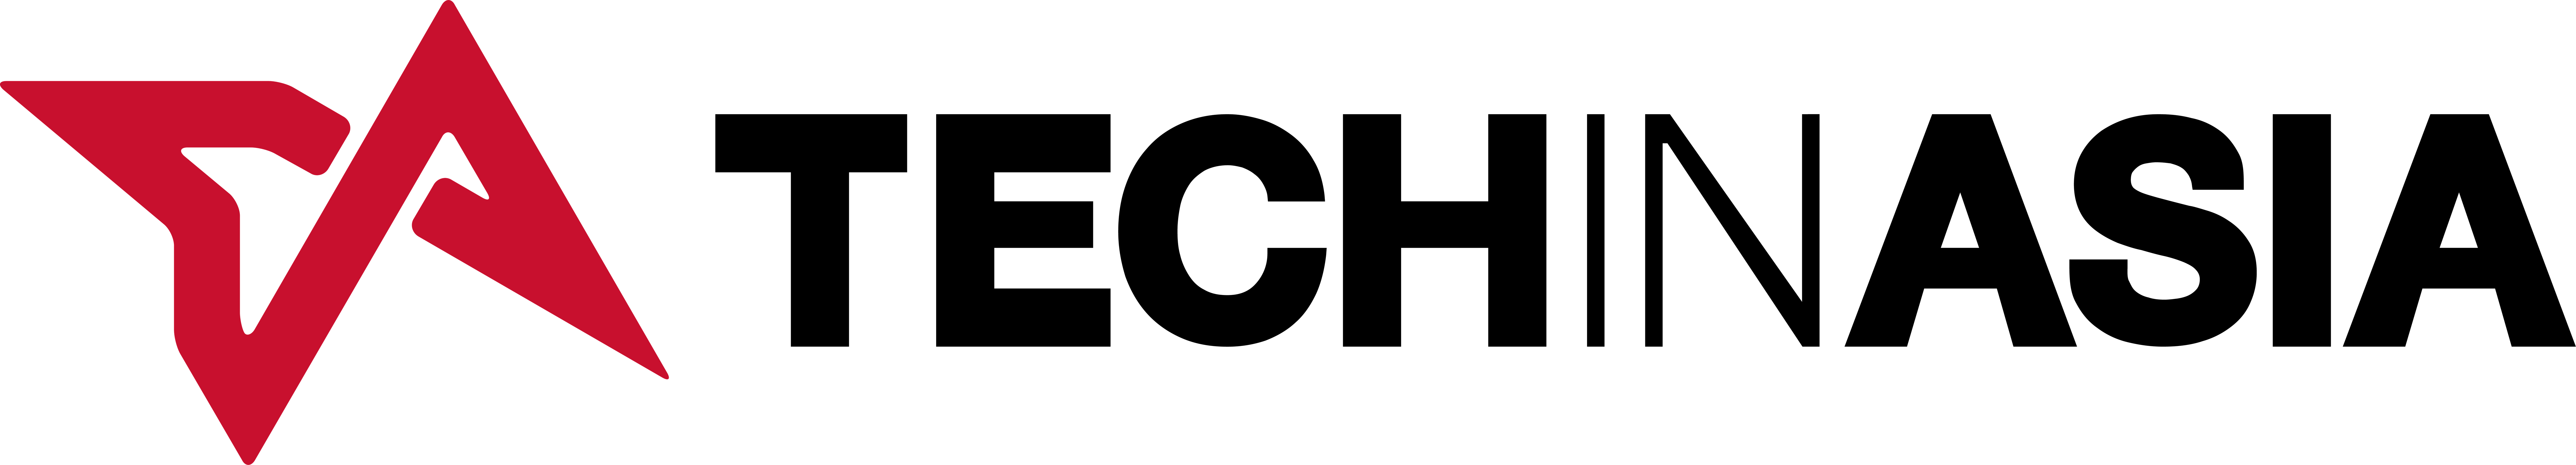 logo-techinasia